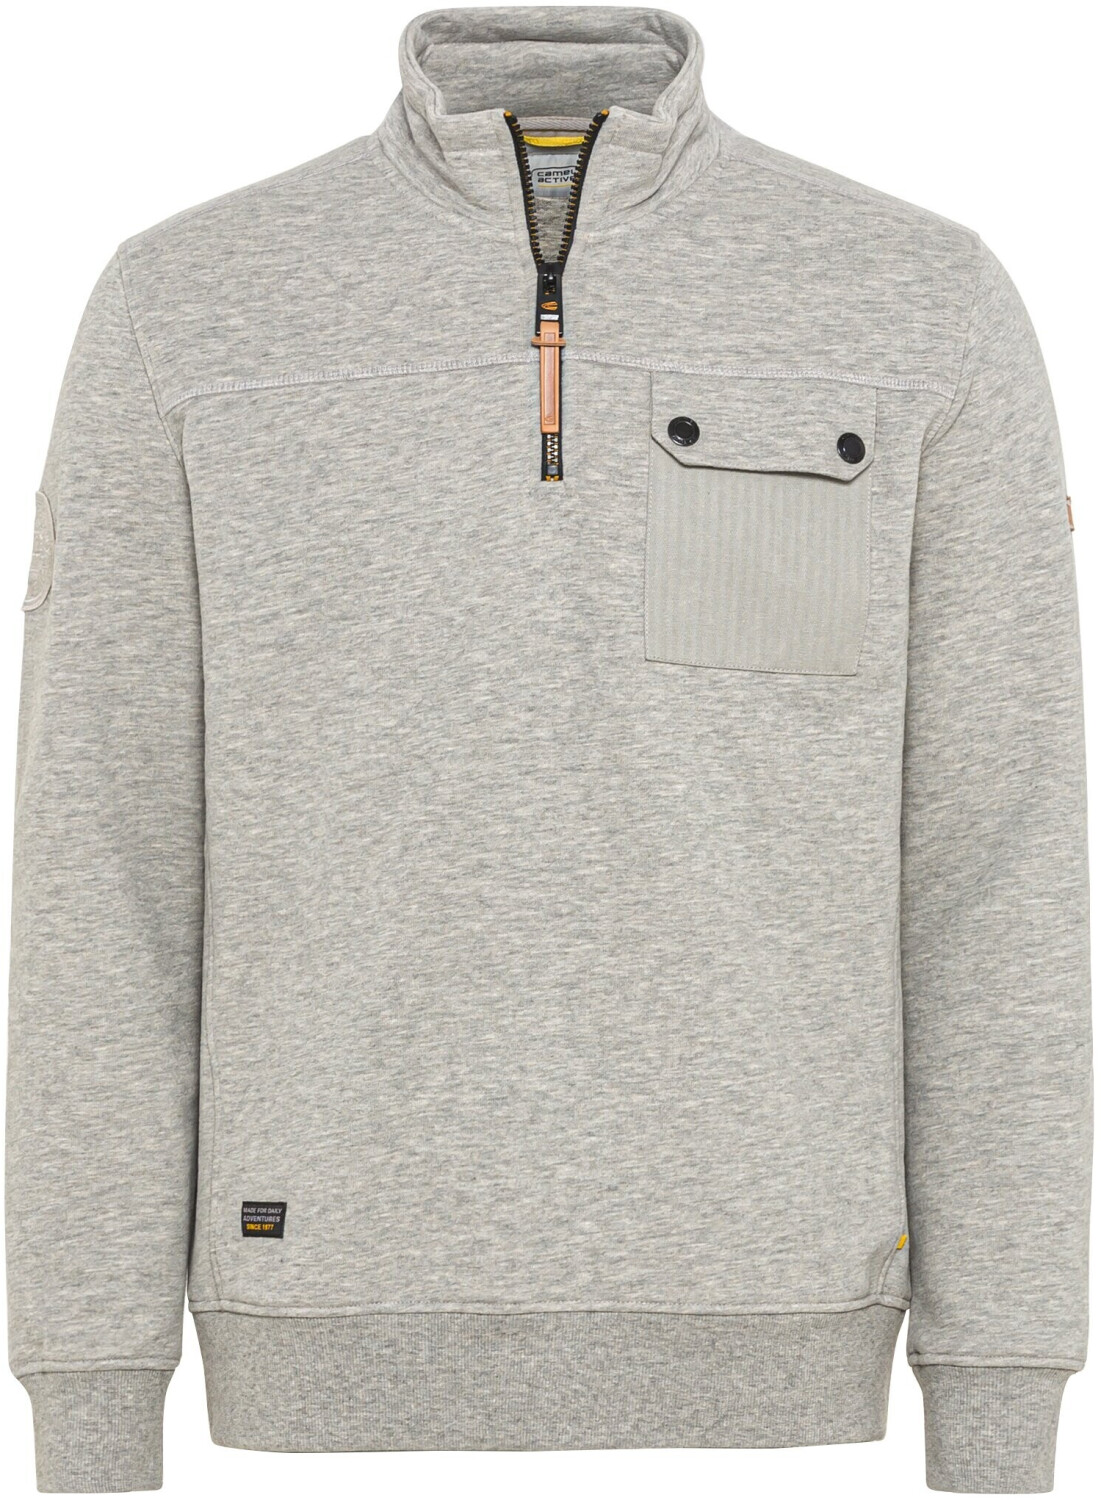 72,00 Sweatshirt mit Active Camel (409420-8W14-06) Troyer € bei stone | gray Preisvergleich Stehkragen ab